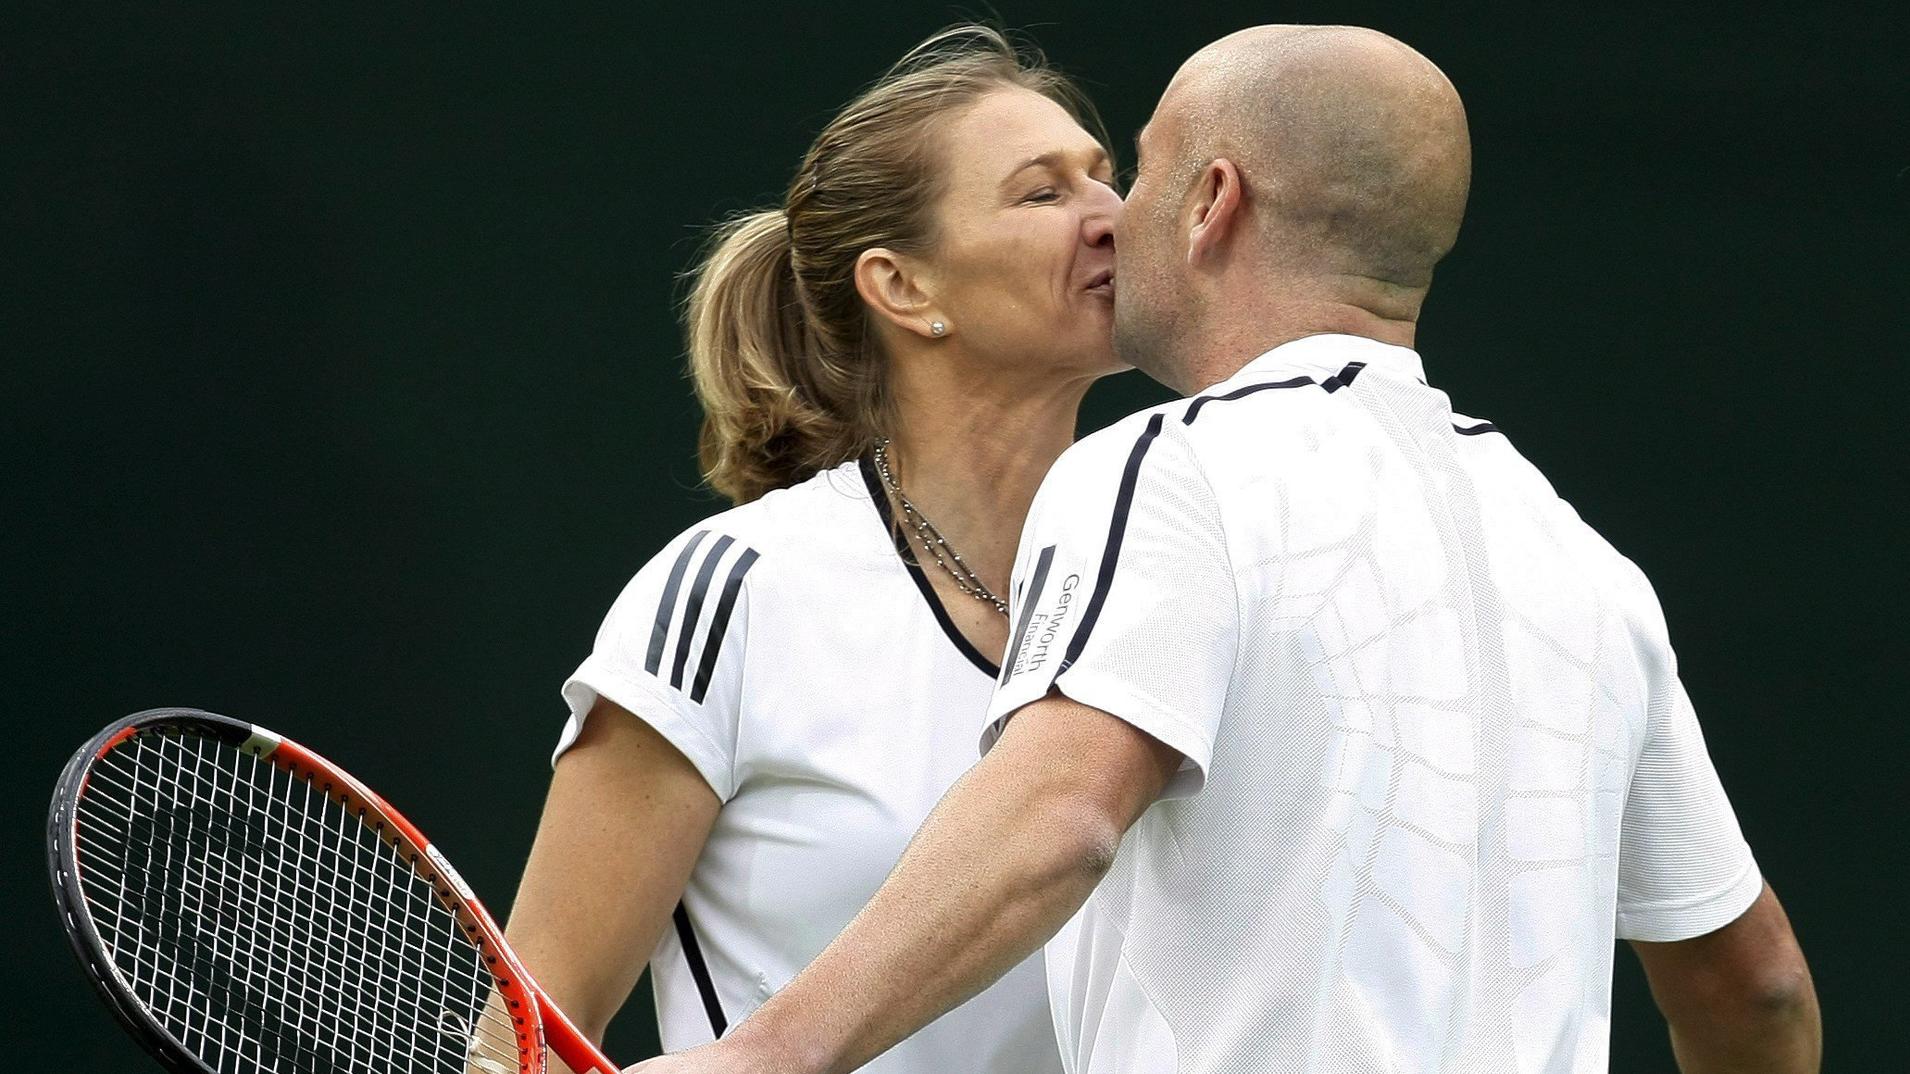 ARCHIV - 17.05.2009, Großbritannien, London: Die ehemalige deutsche Tennisspielerin Steffi Graf und ihr Mann Andre Agassi küssen sich nach einem Showturnier in Wimbledon.  (zu dpa: ««Man hat sie nicht umsonst die Gräfin genannt» - Steffi Graf wird 50